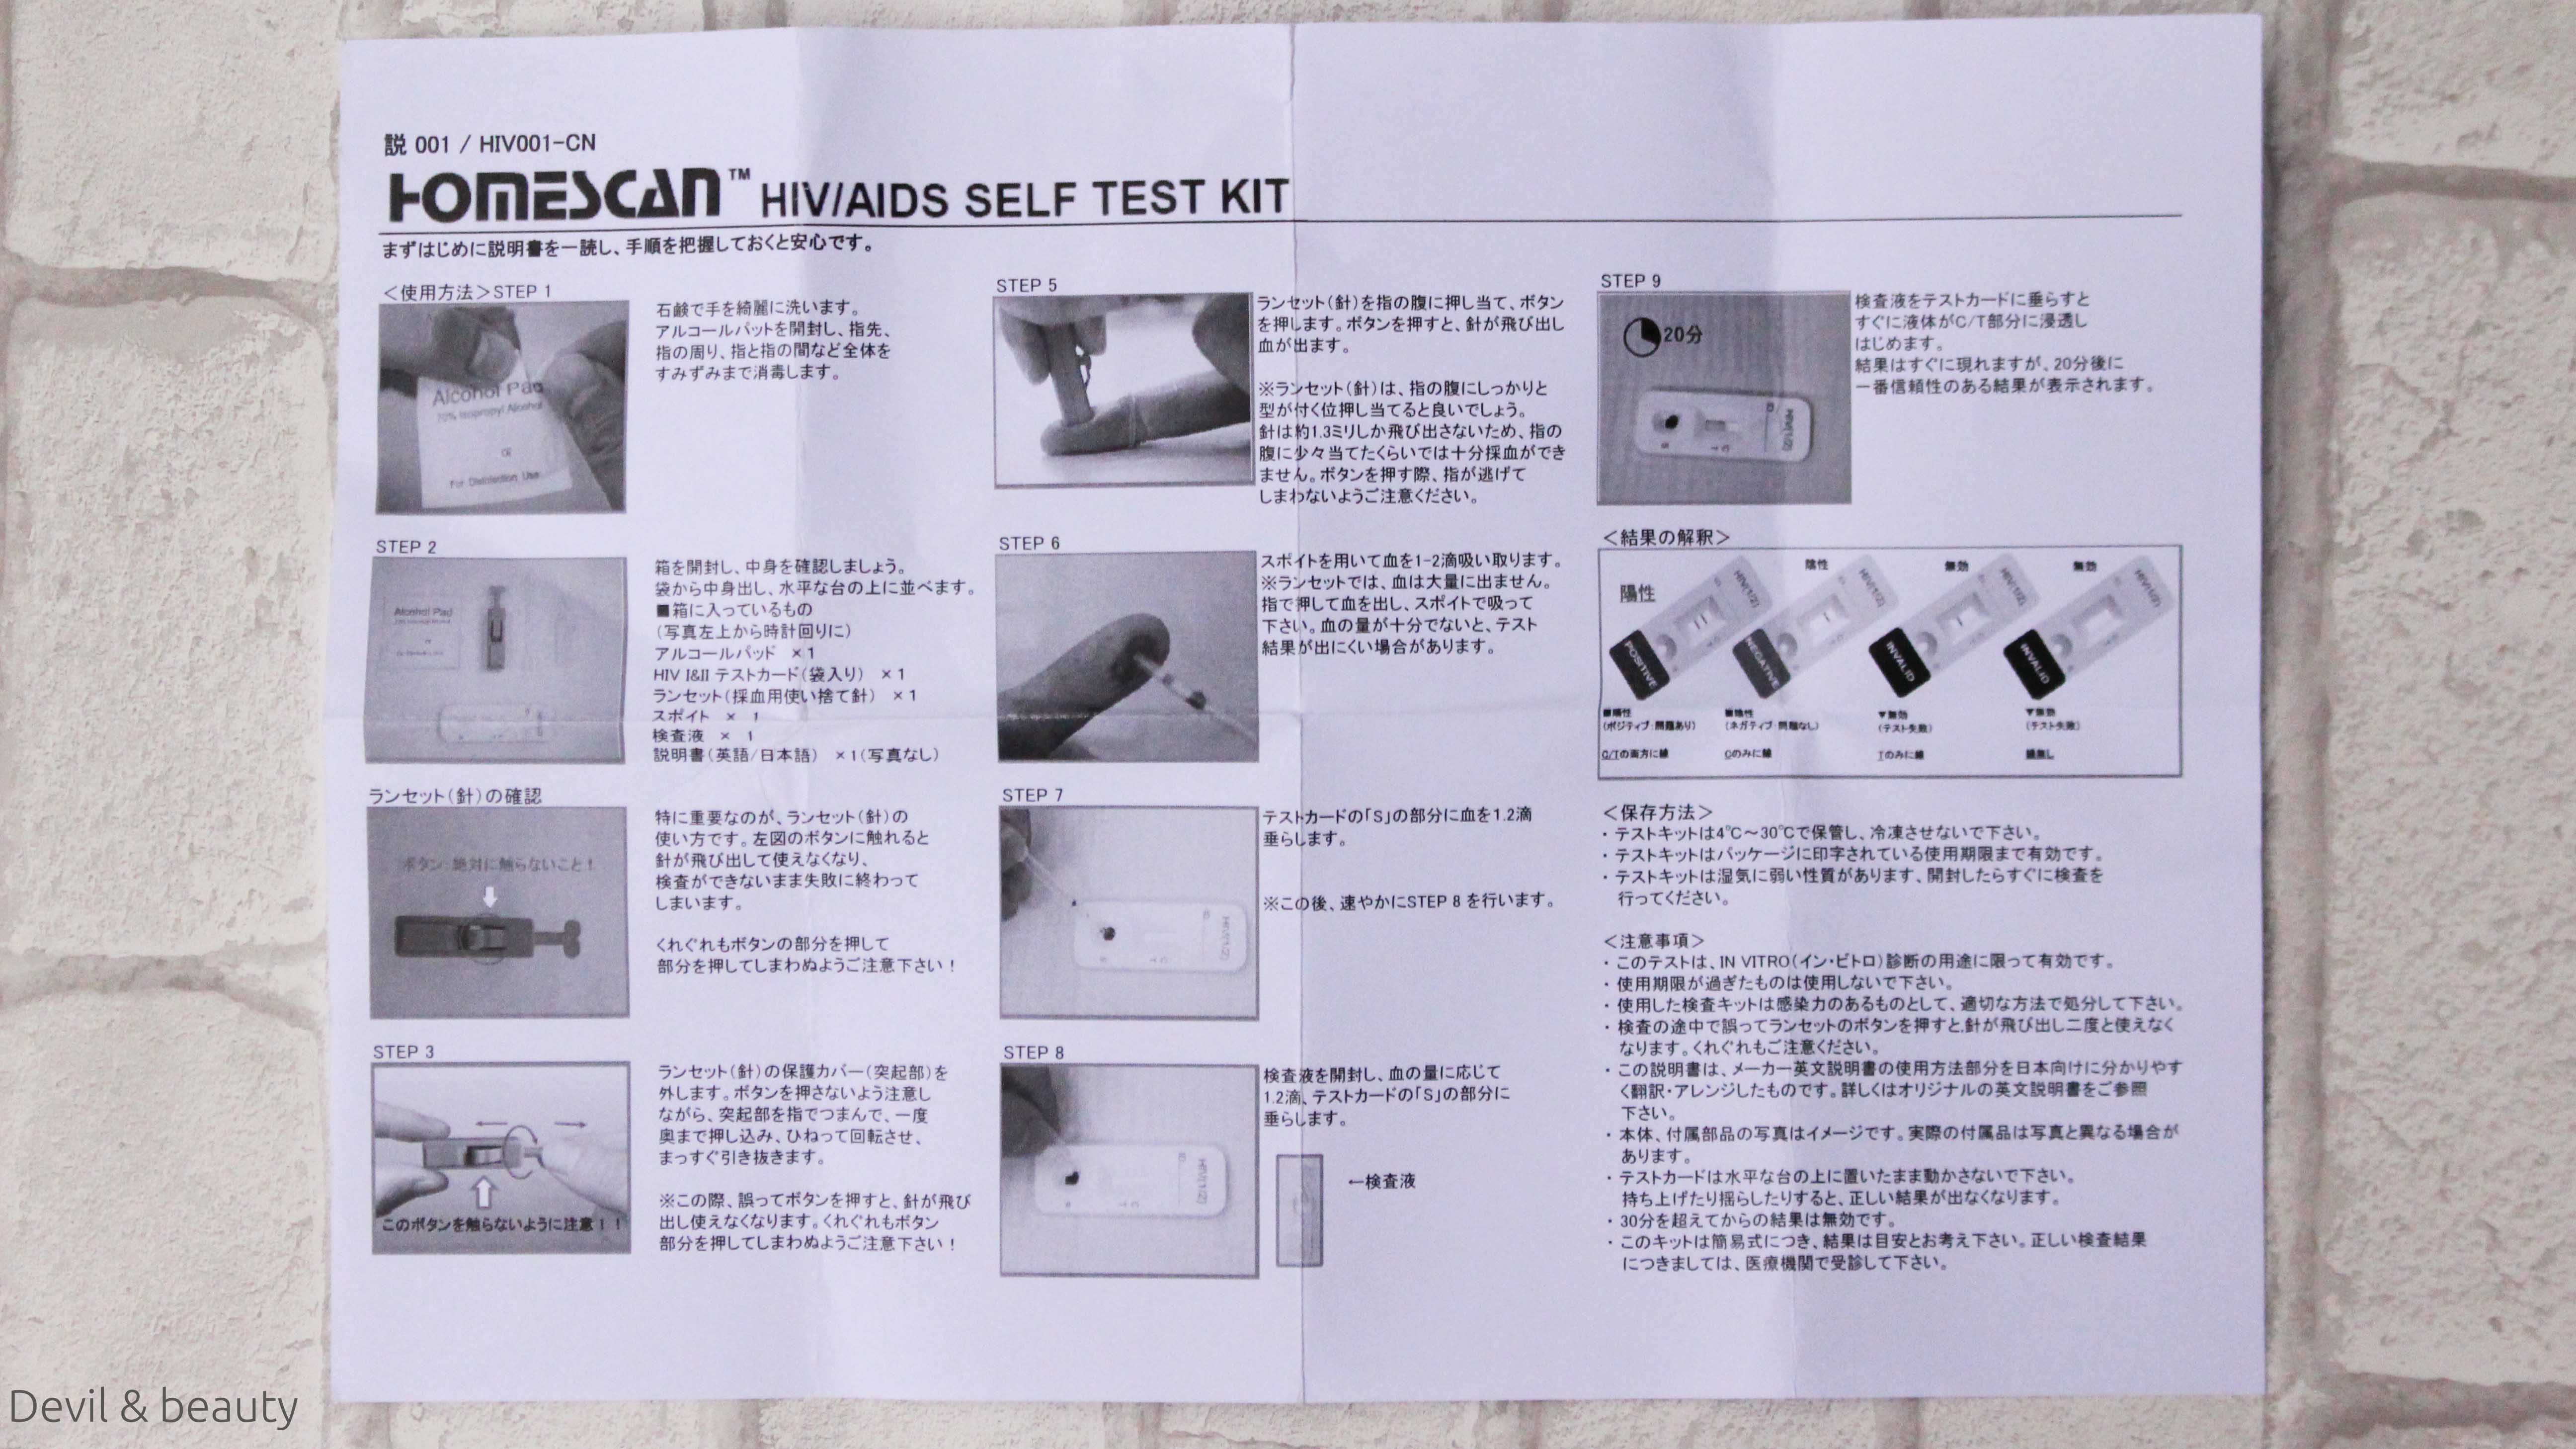 boson-biotech-hiv-test-kit4 - image